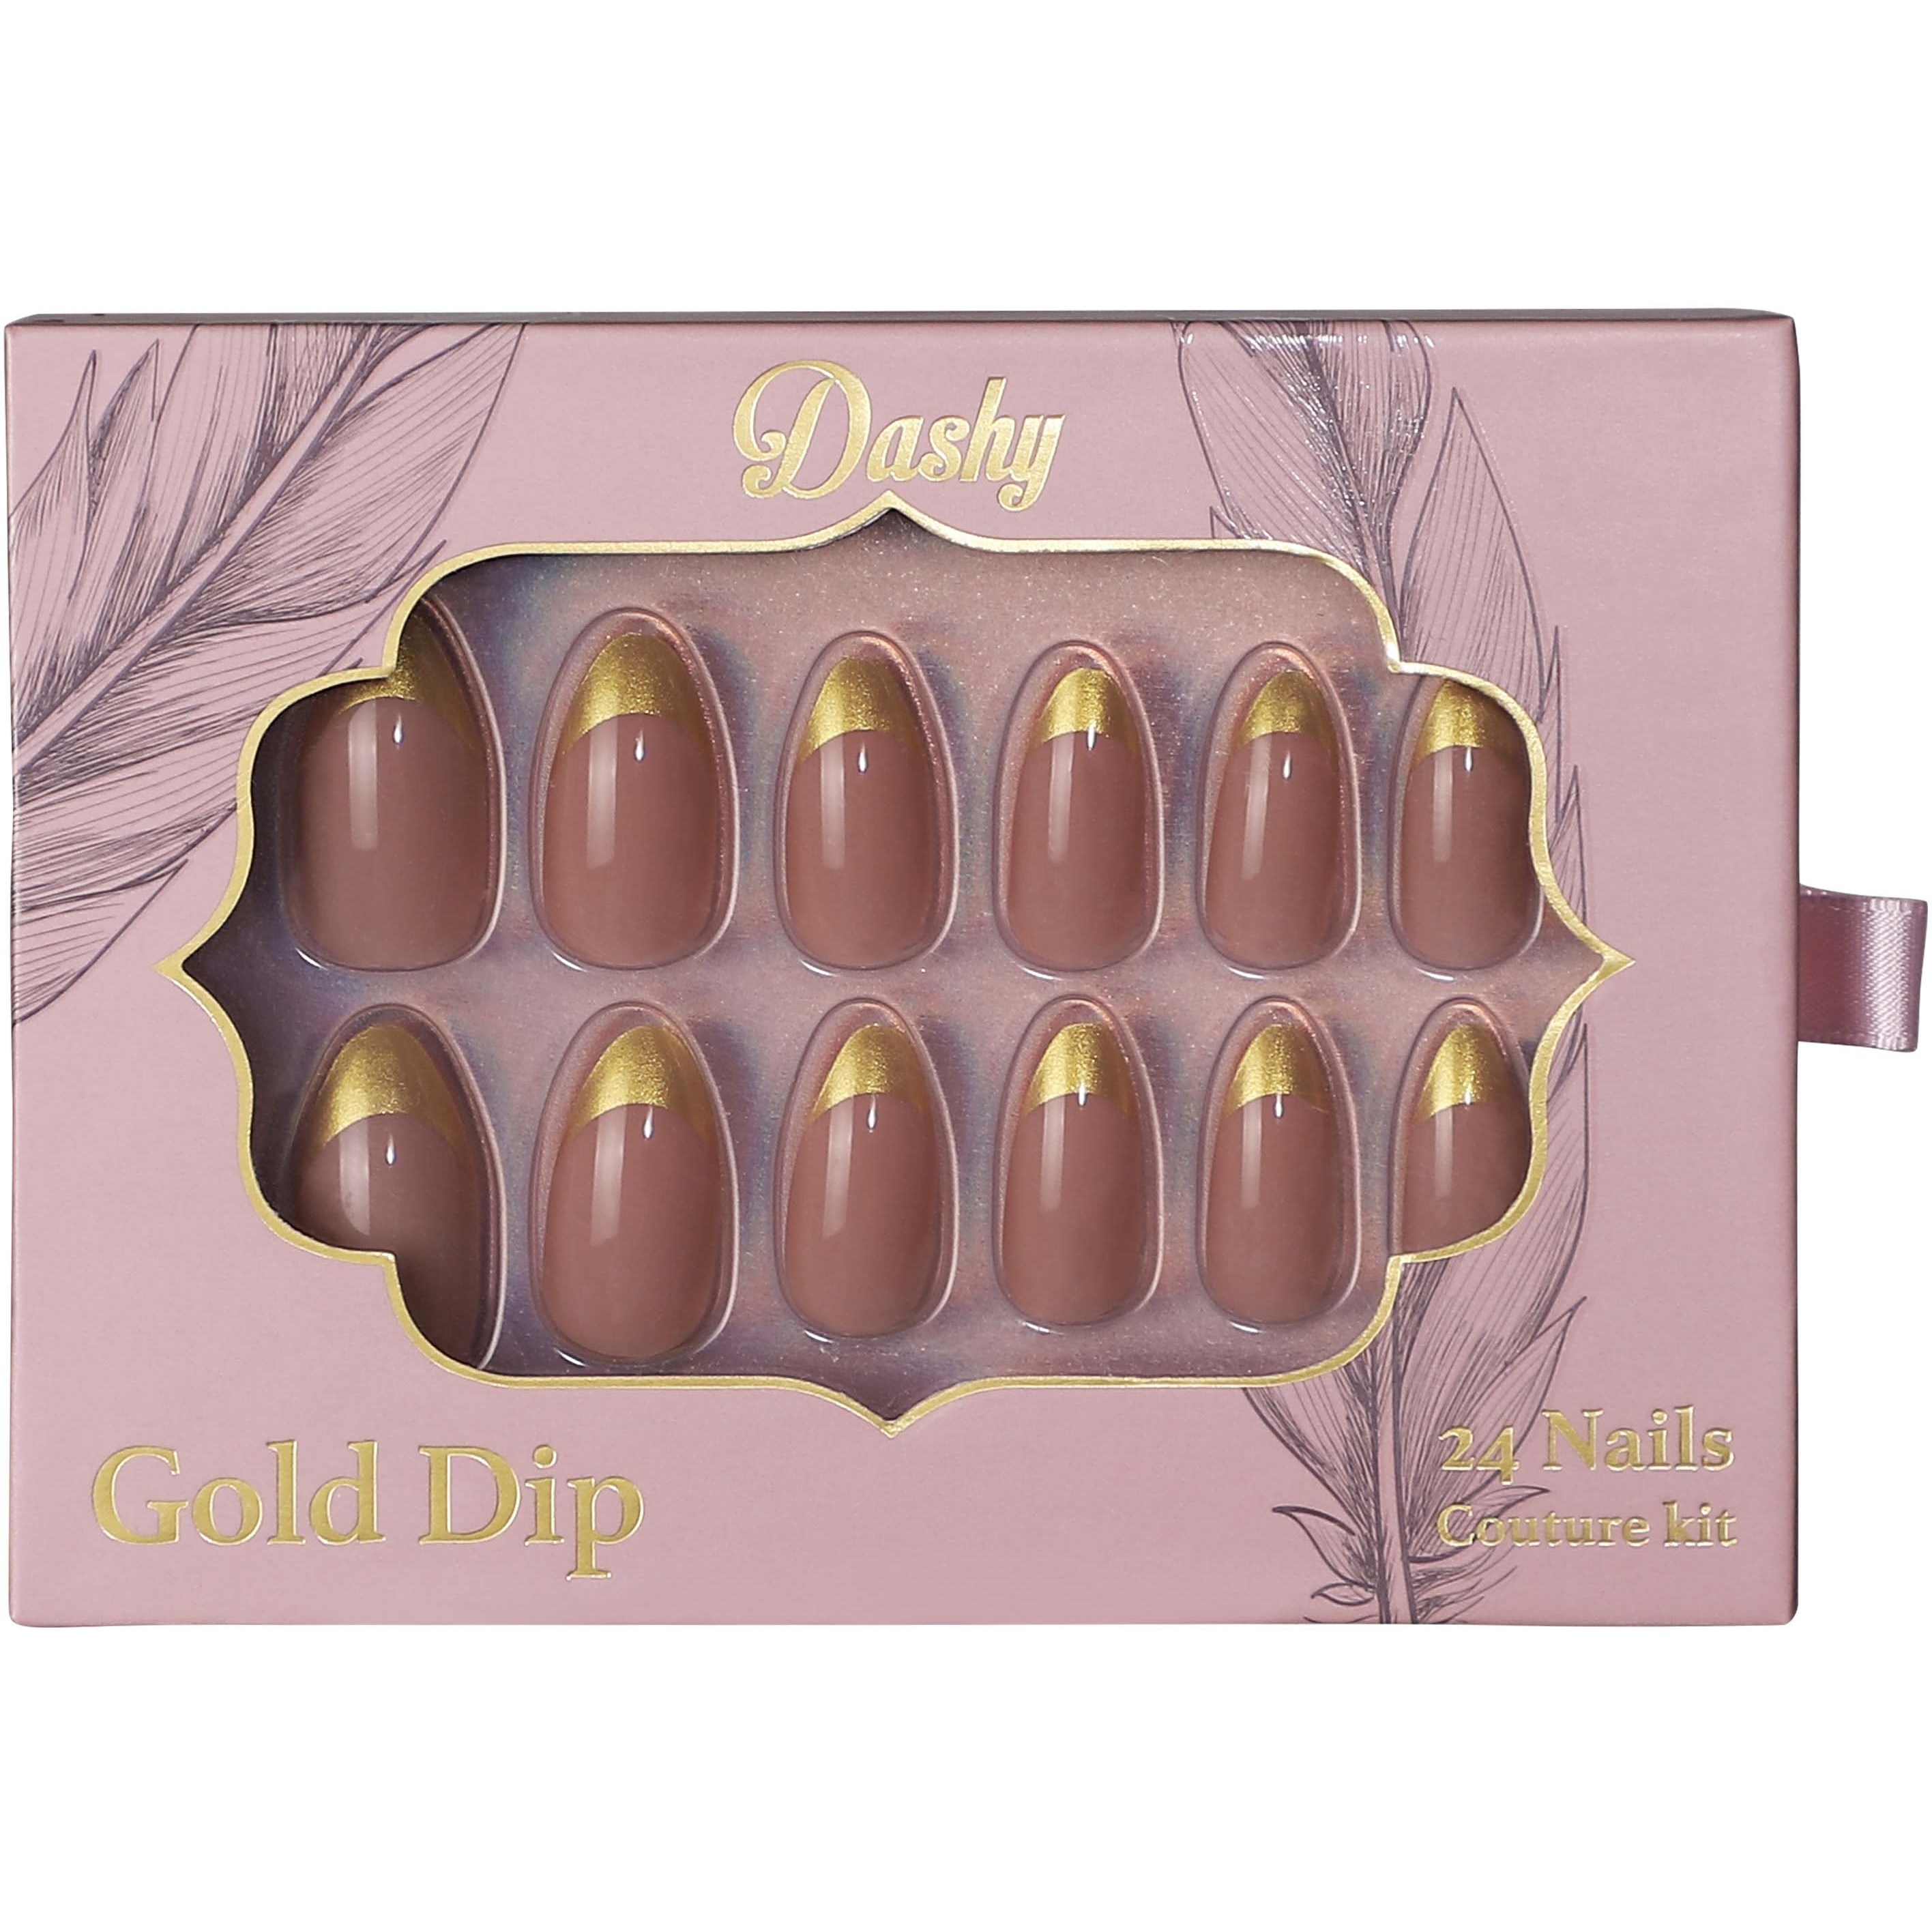 Bilde av Dashy 24 Nails Couture Kit Gold Dip